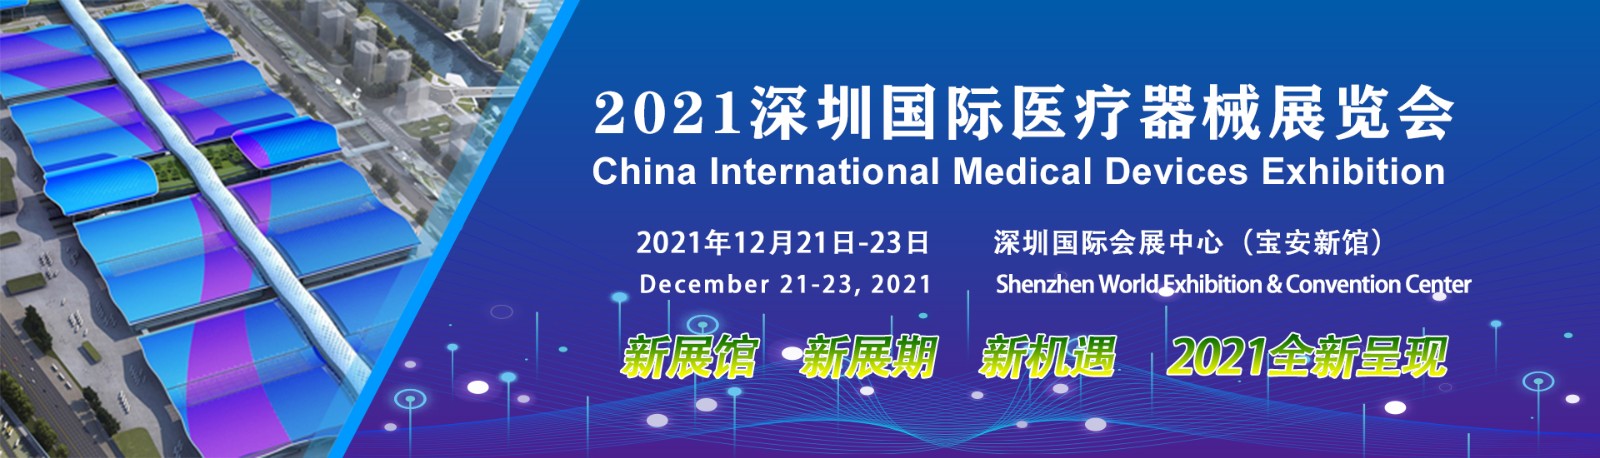 2021深圳国际医疗器械博览会 参展报名全面启动